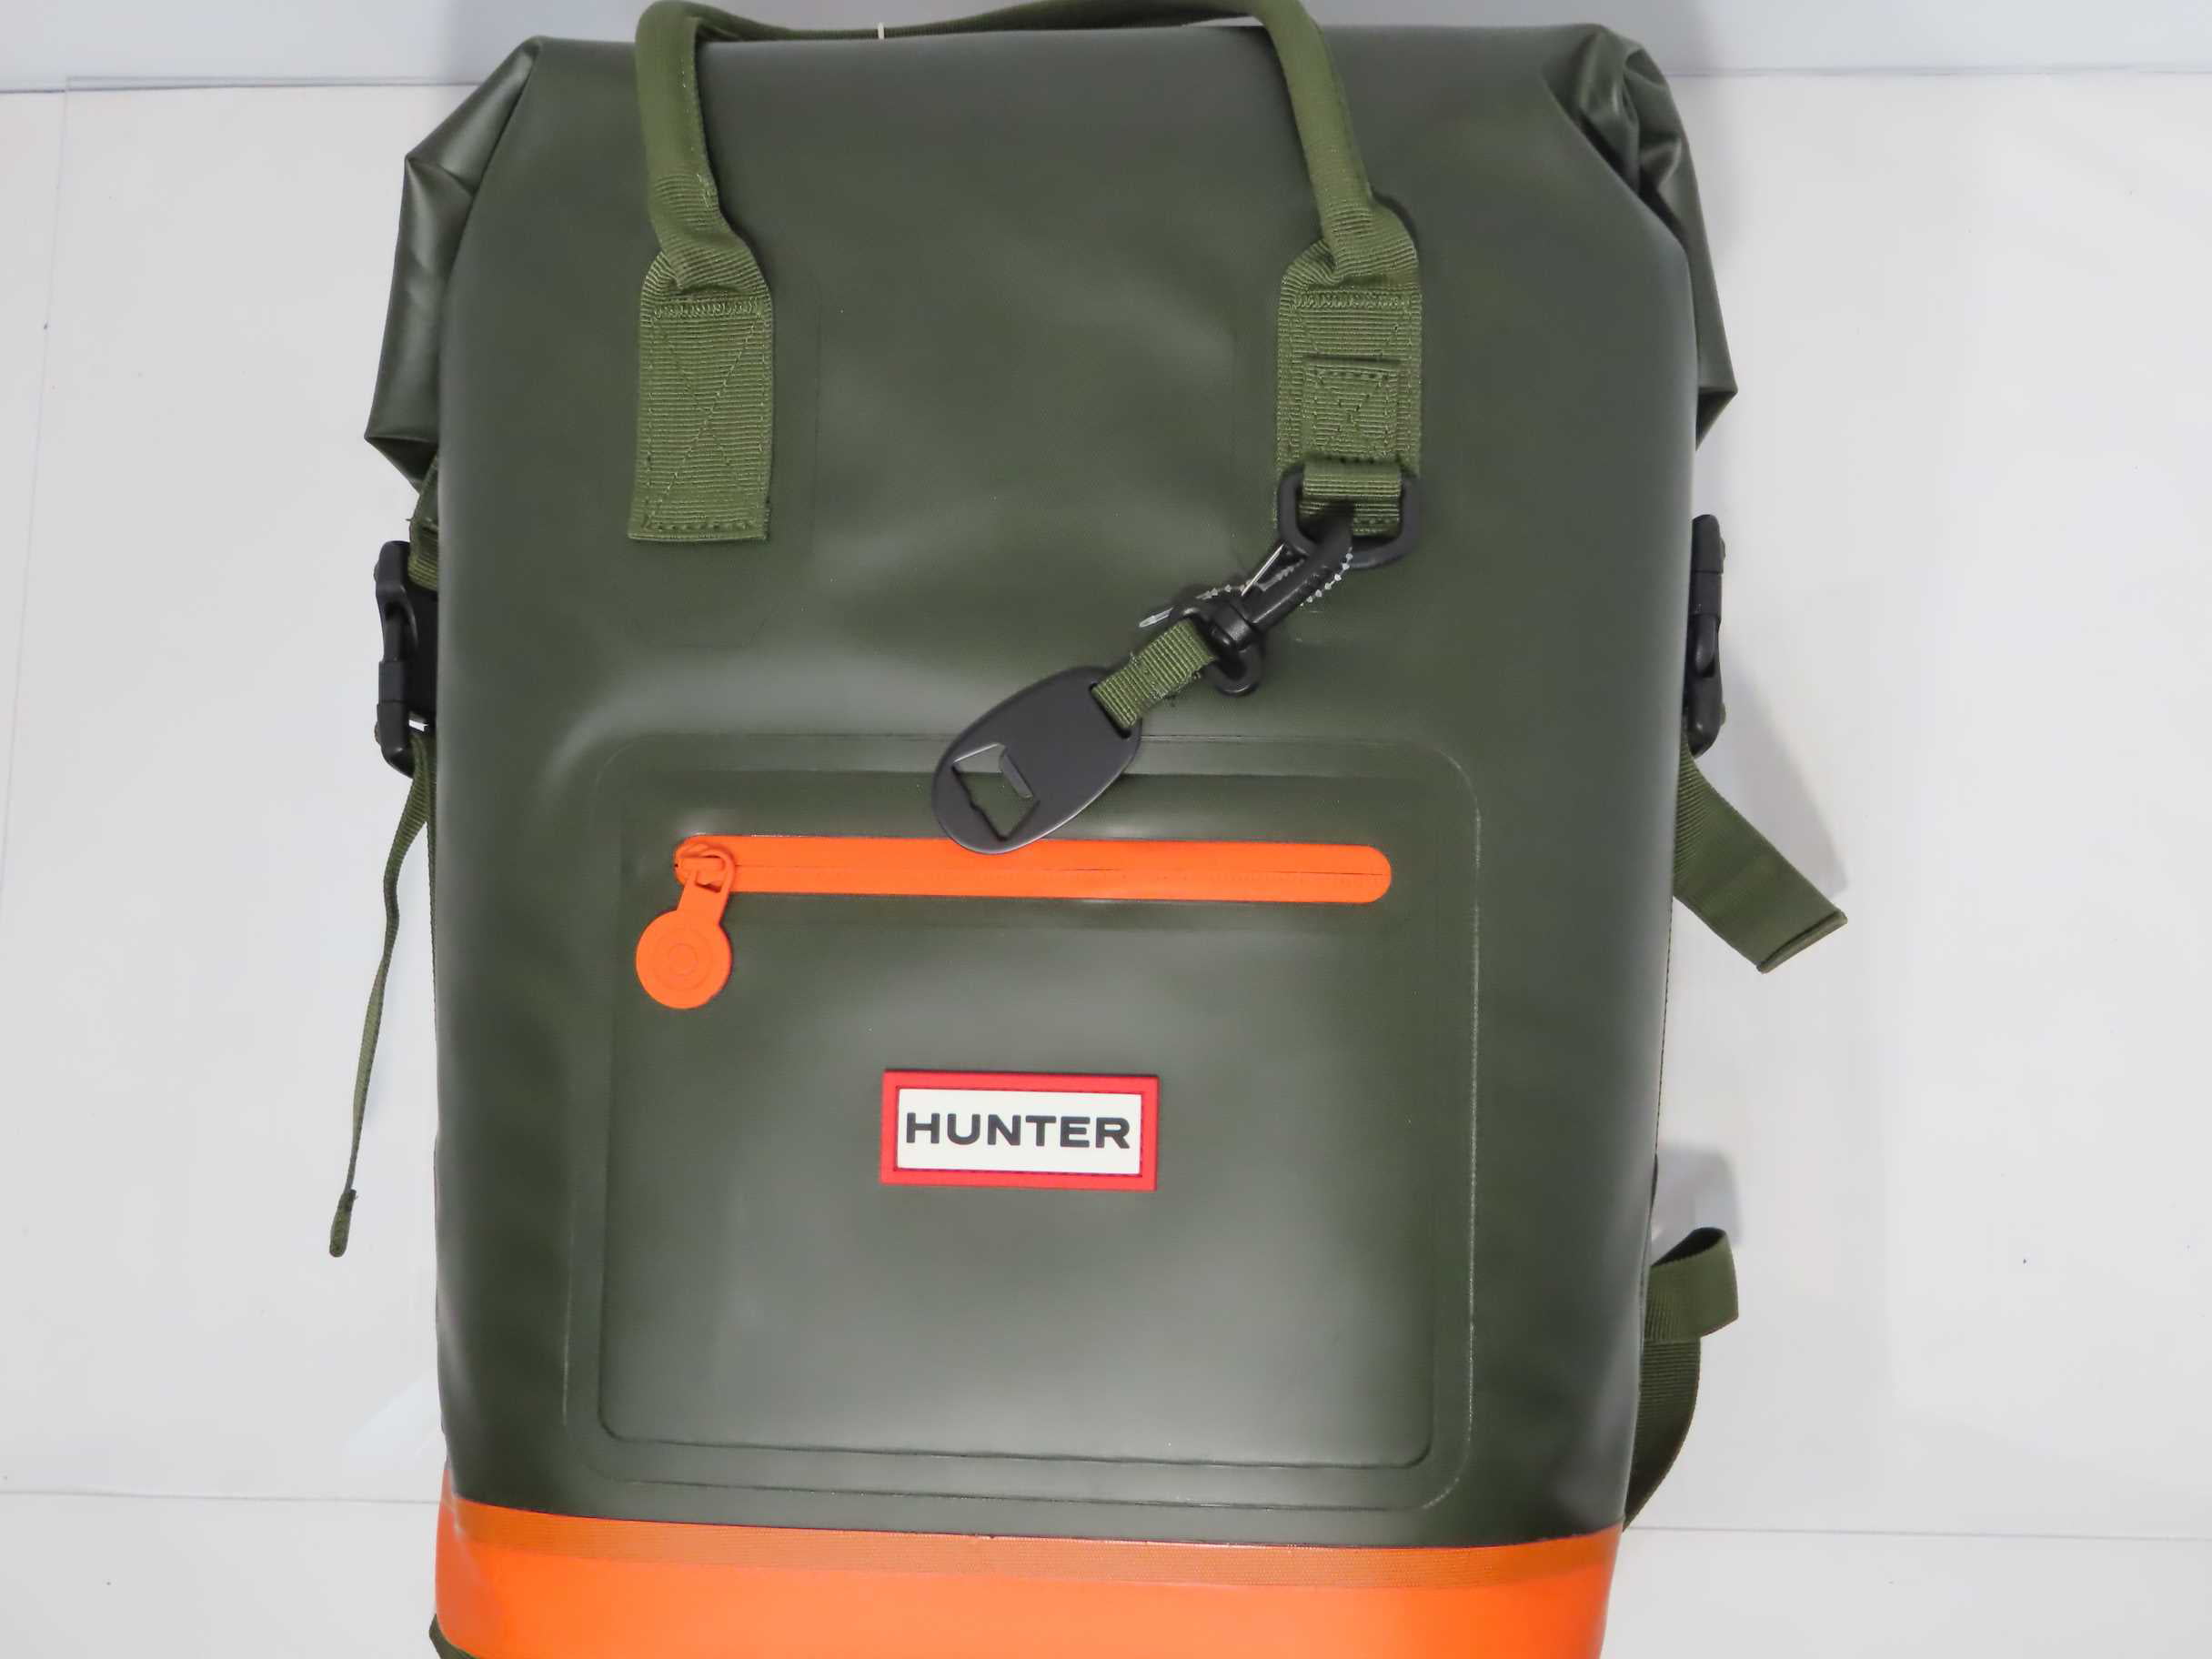 Hunter Cooler Backpack Target | lupon.gov.ph